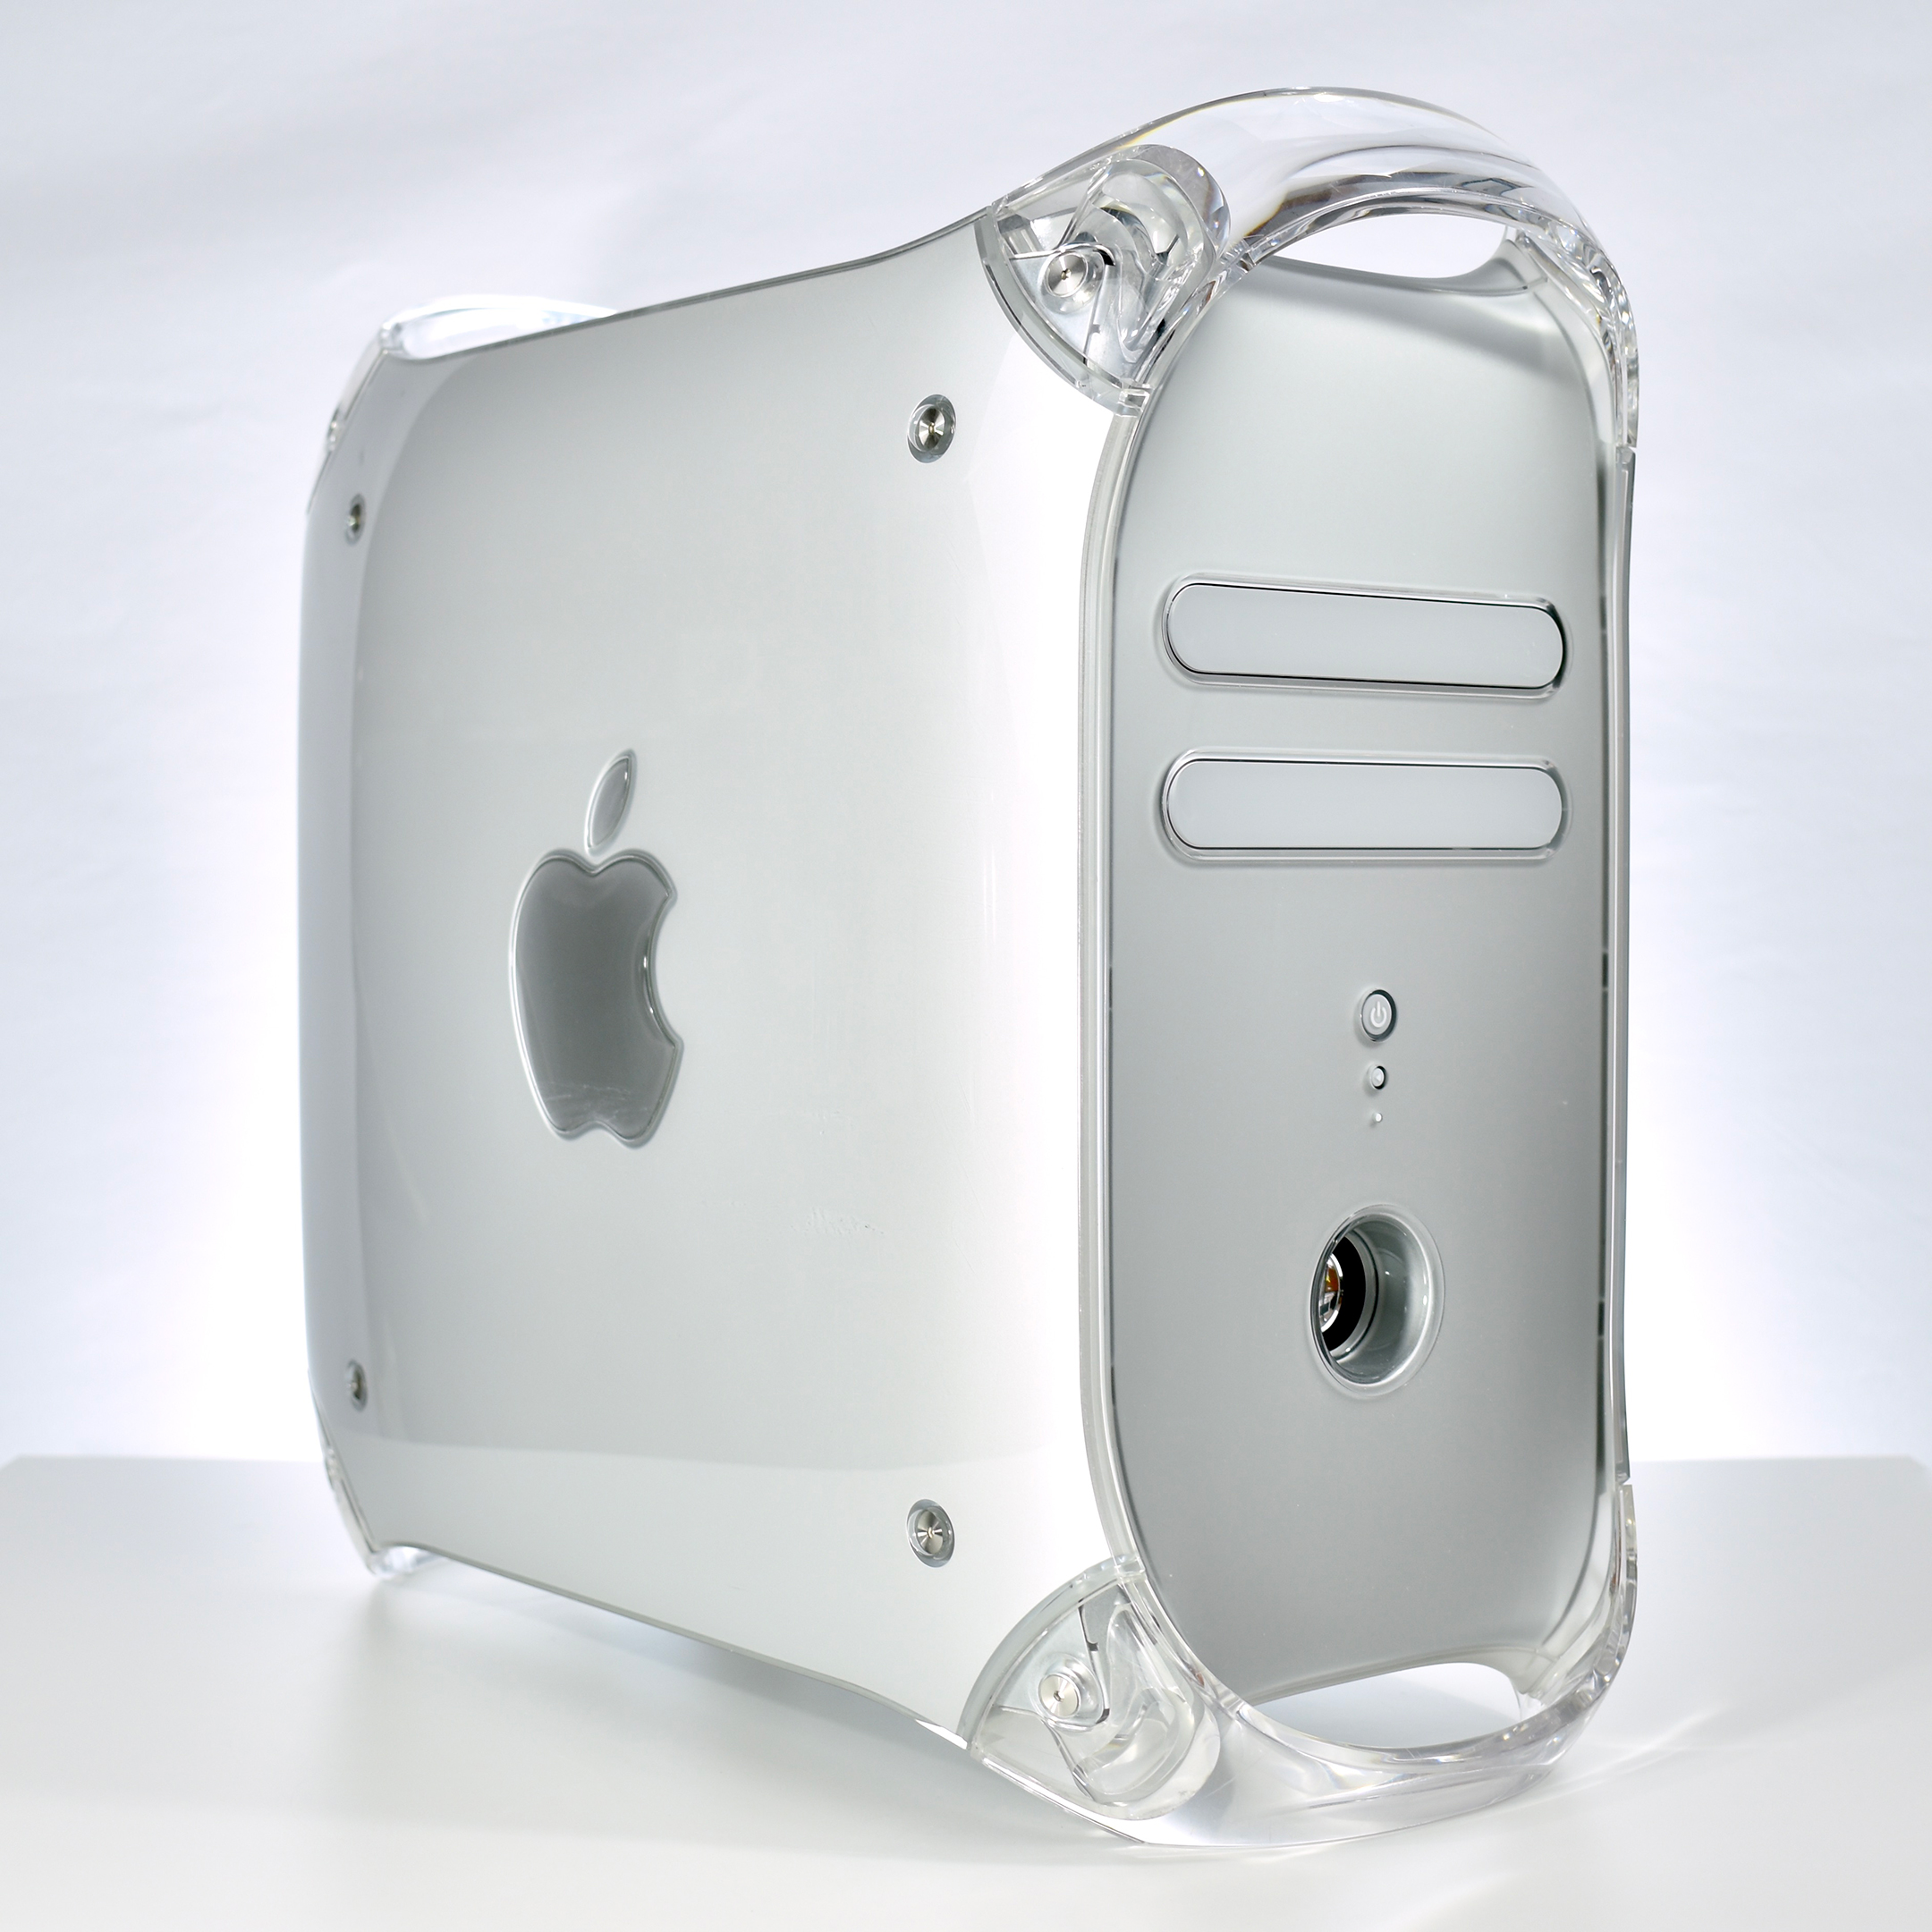 Power Mac G4 (1.0 GHz, “Quicksilver,” 2002) – mattjfuller.com